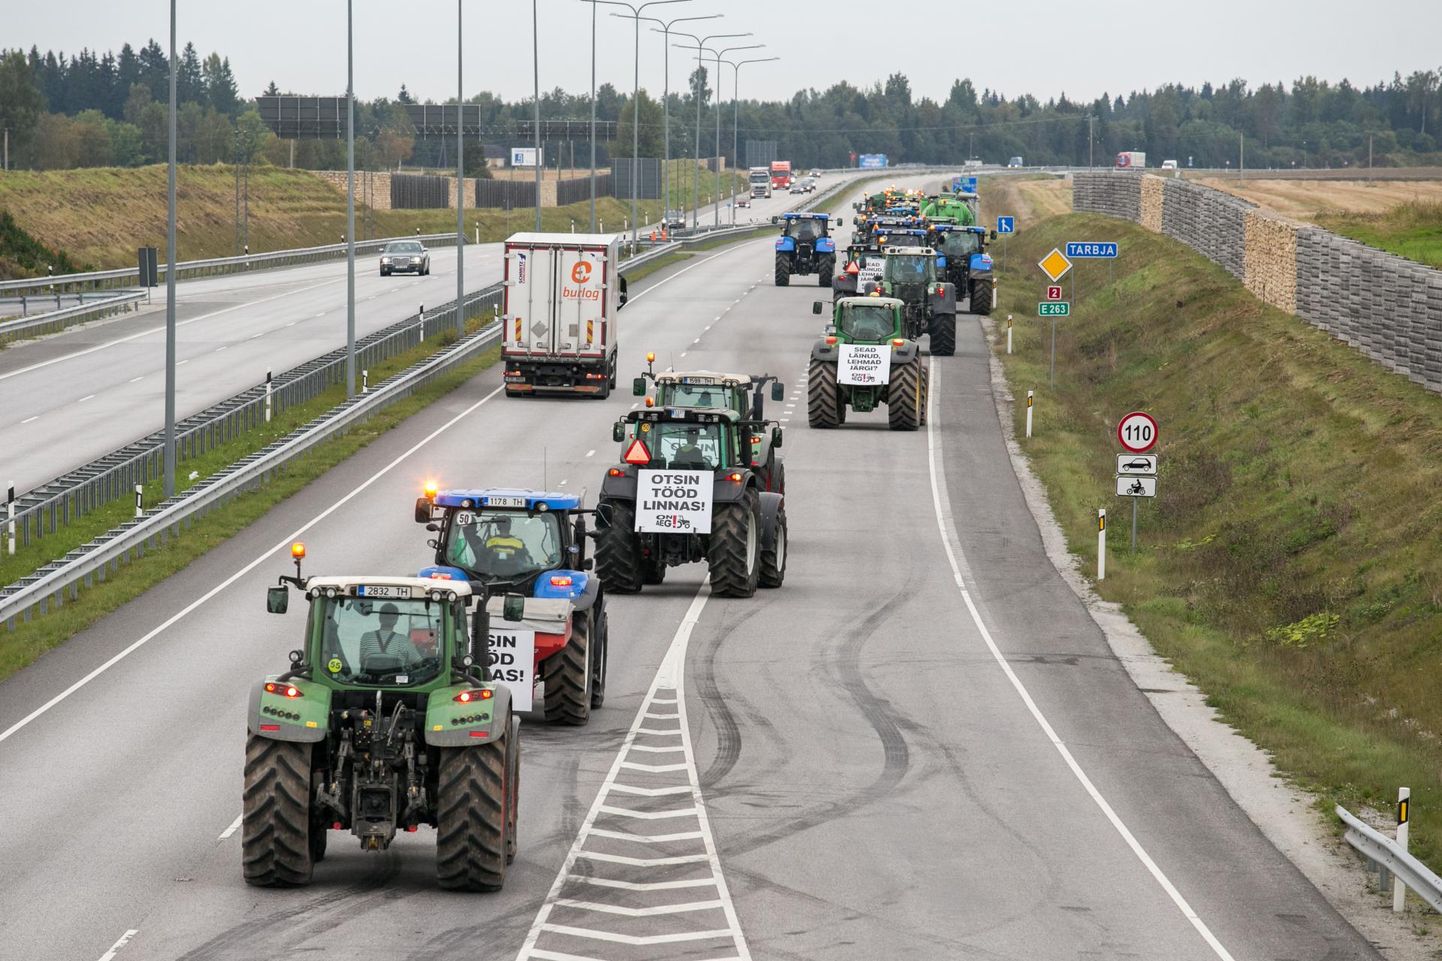 Eestlased üleliia ei streigi, kuid näiteks 2015. aasta septembris käisid põllumehed traktoritega pealinnas.